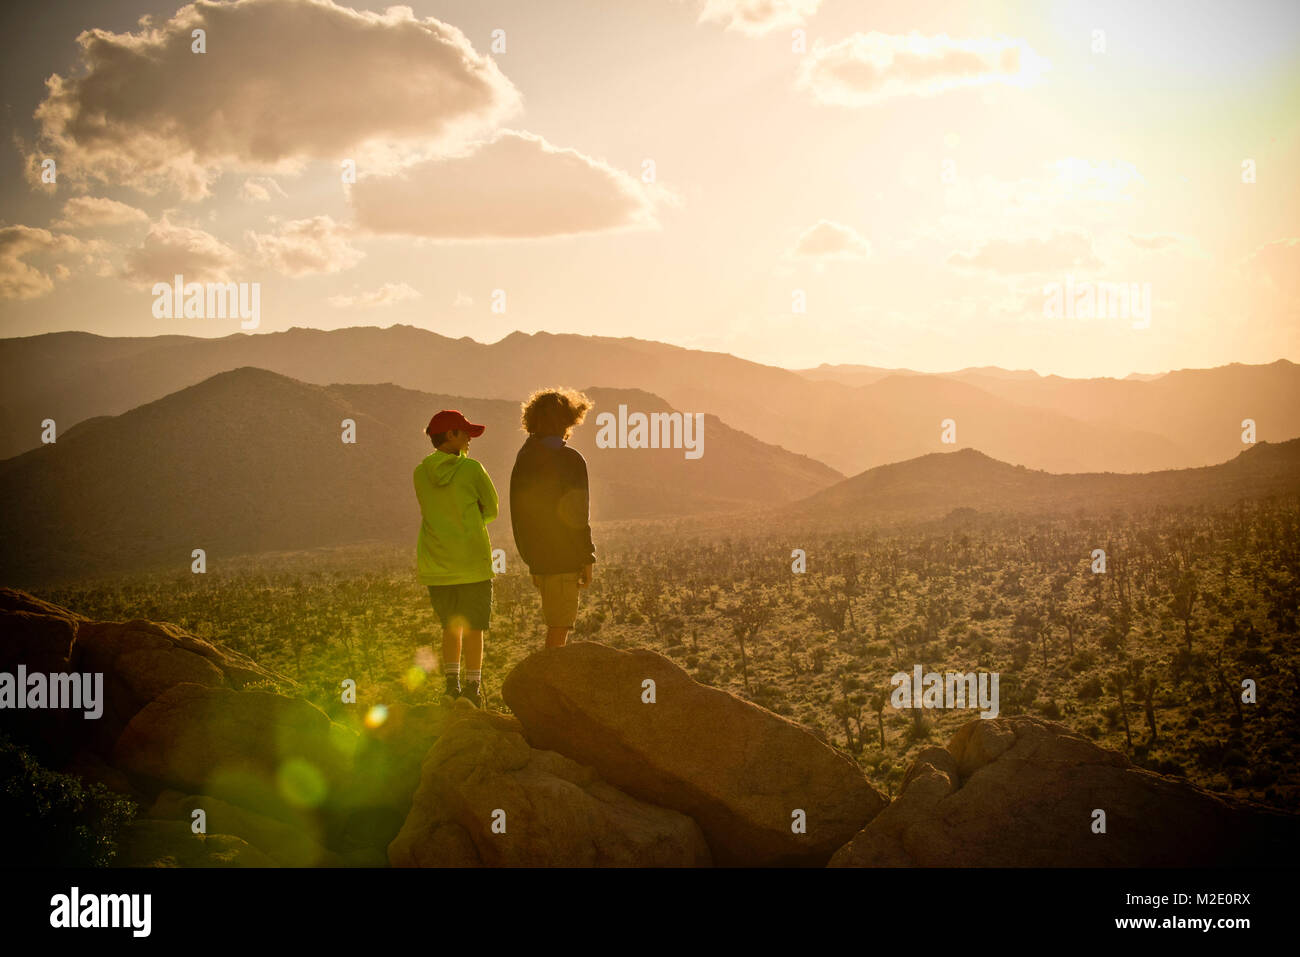 Boys standing on rock admiring desert landscape Stock Photo